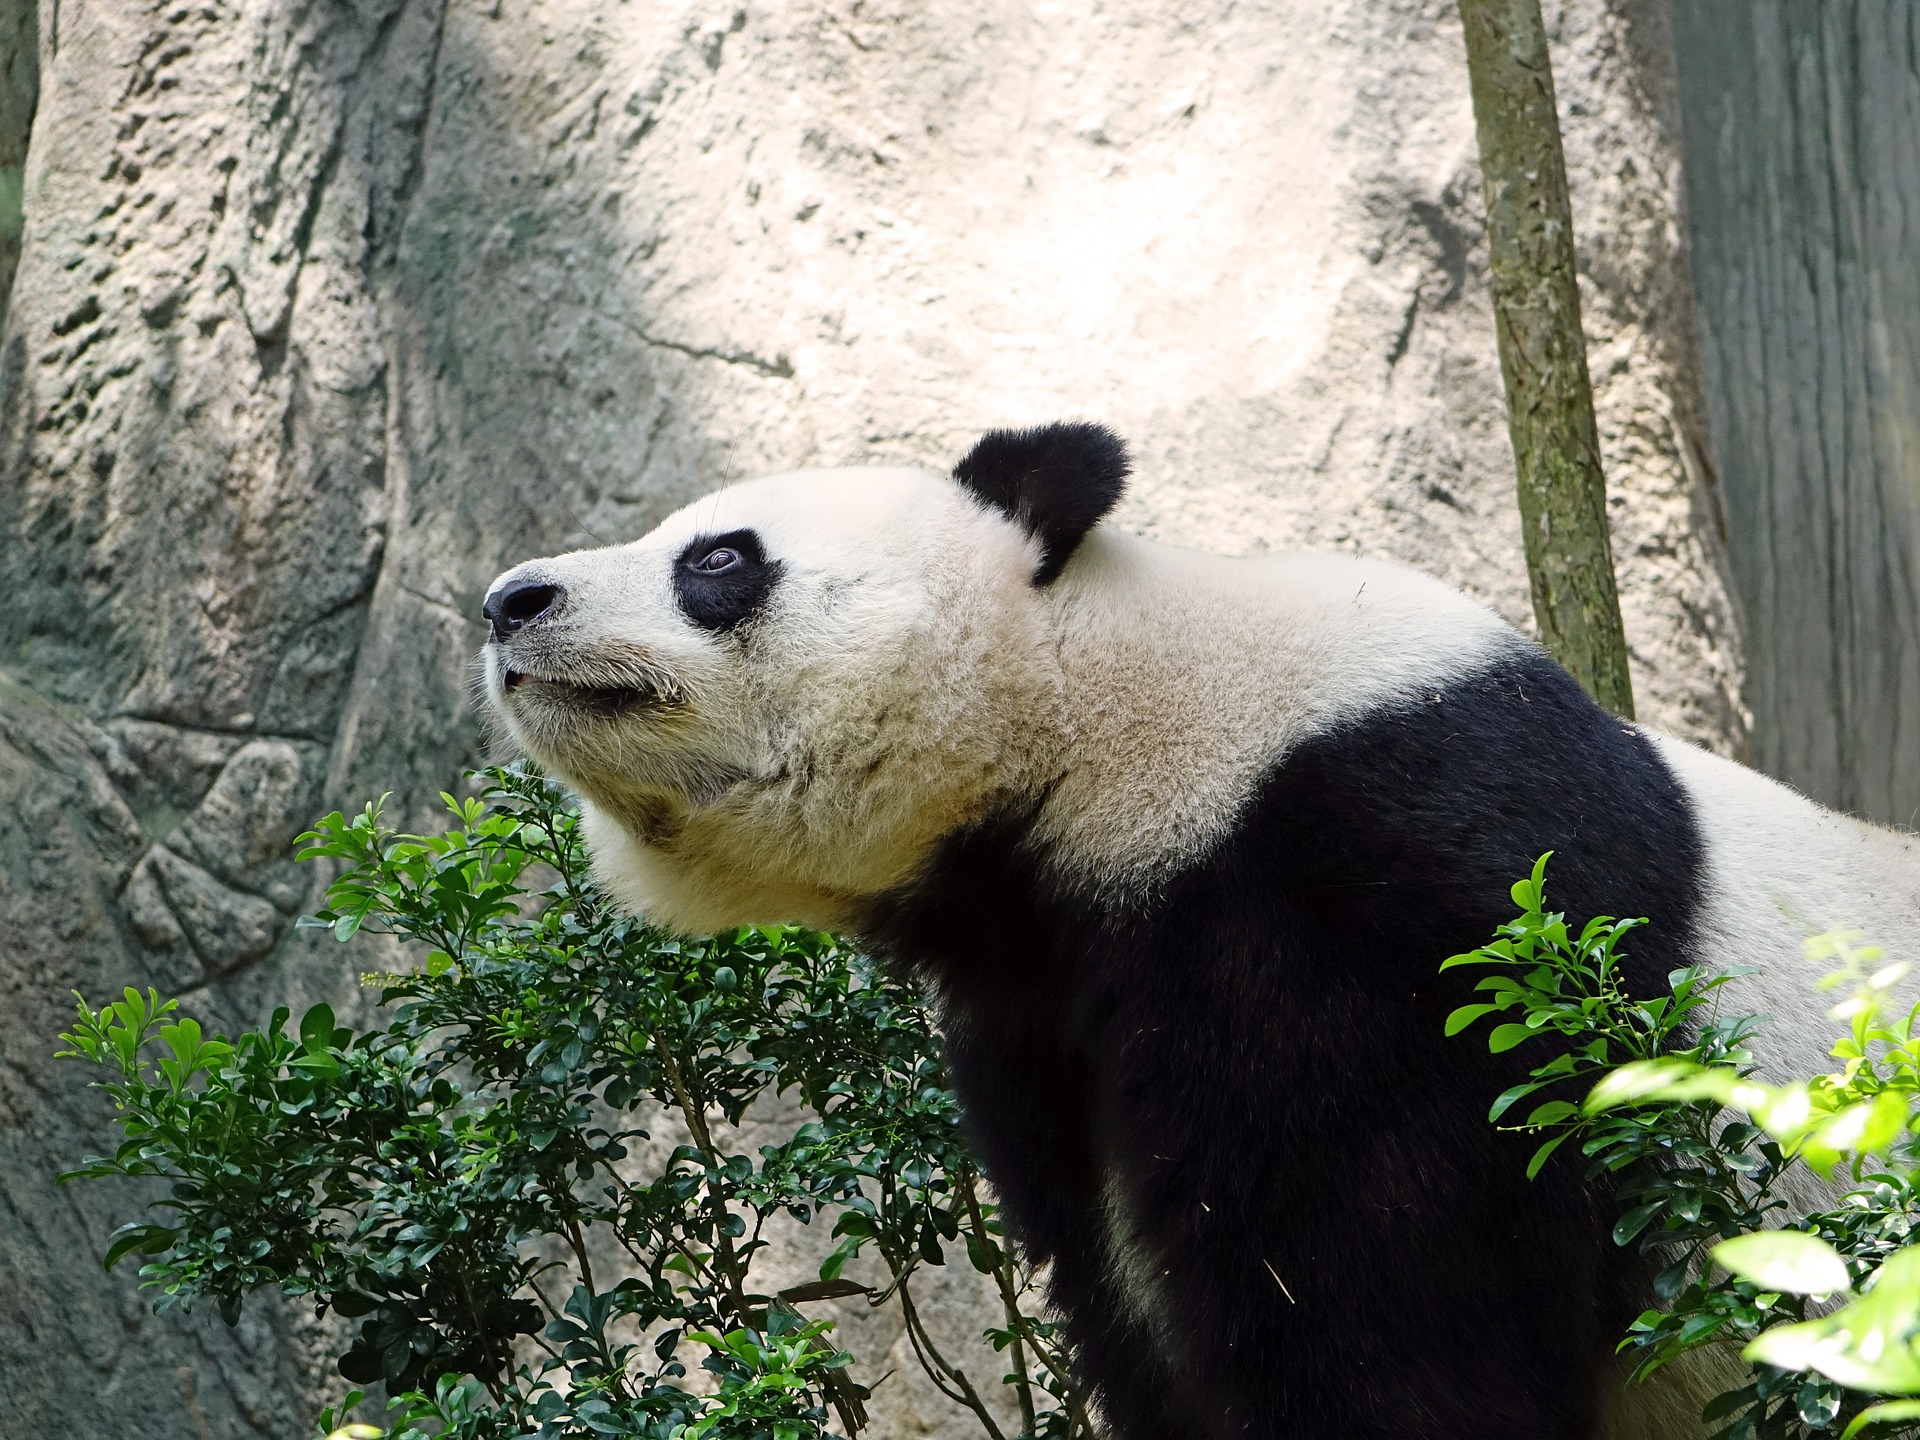 Panda in the zoo photo